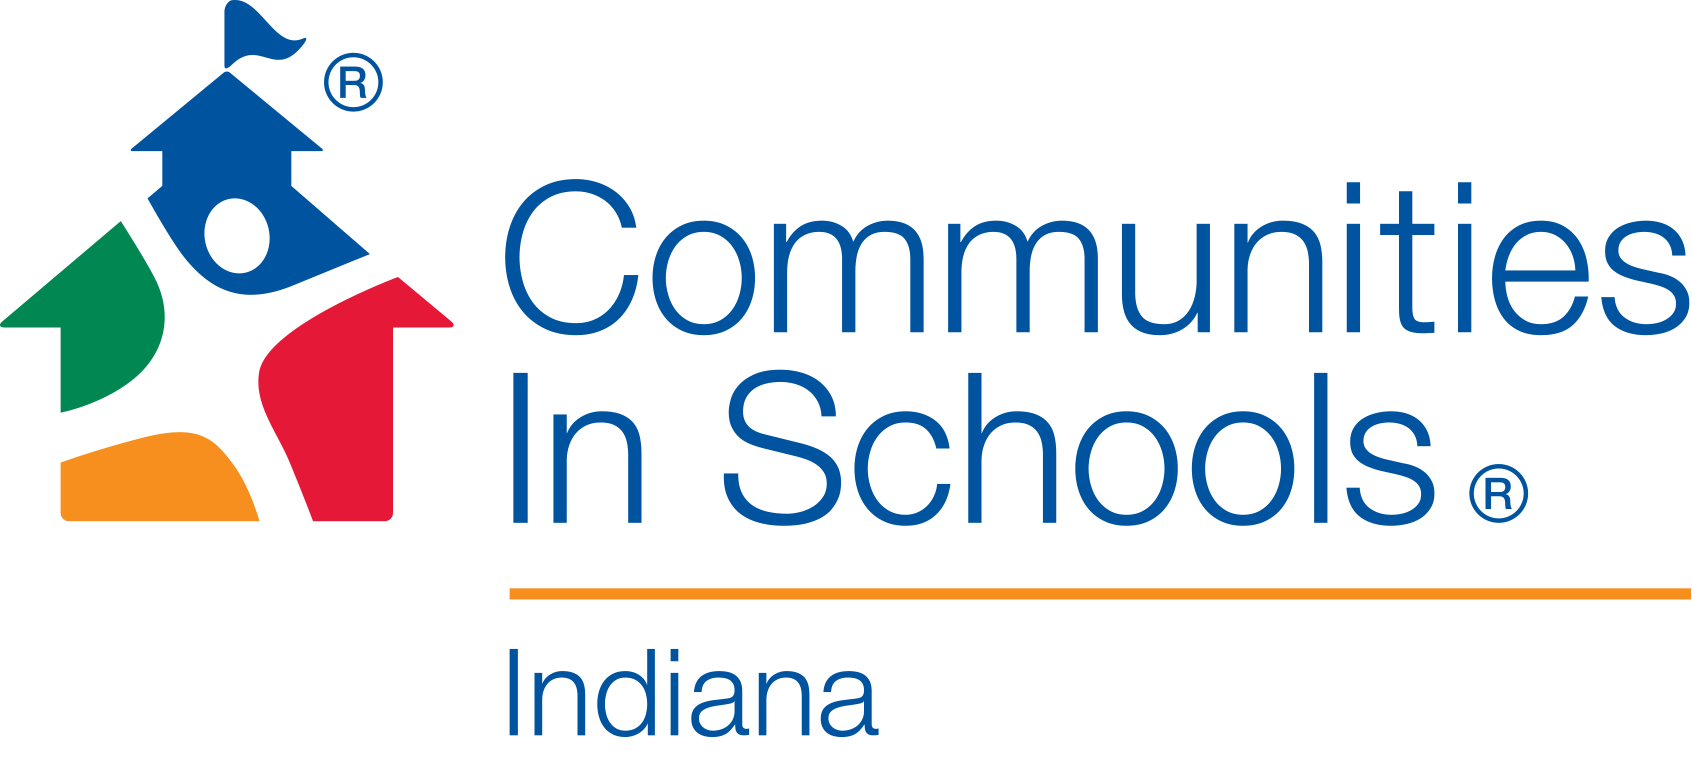 Communities in Schools Indiana